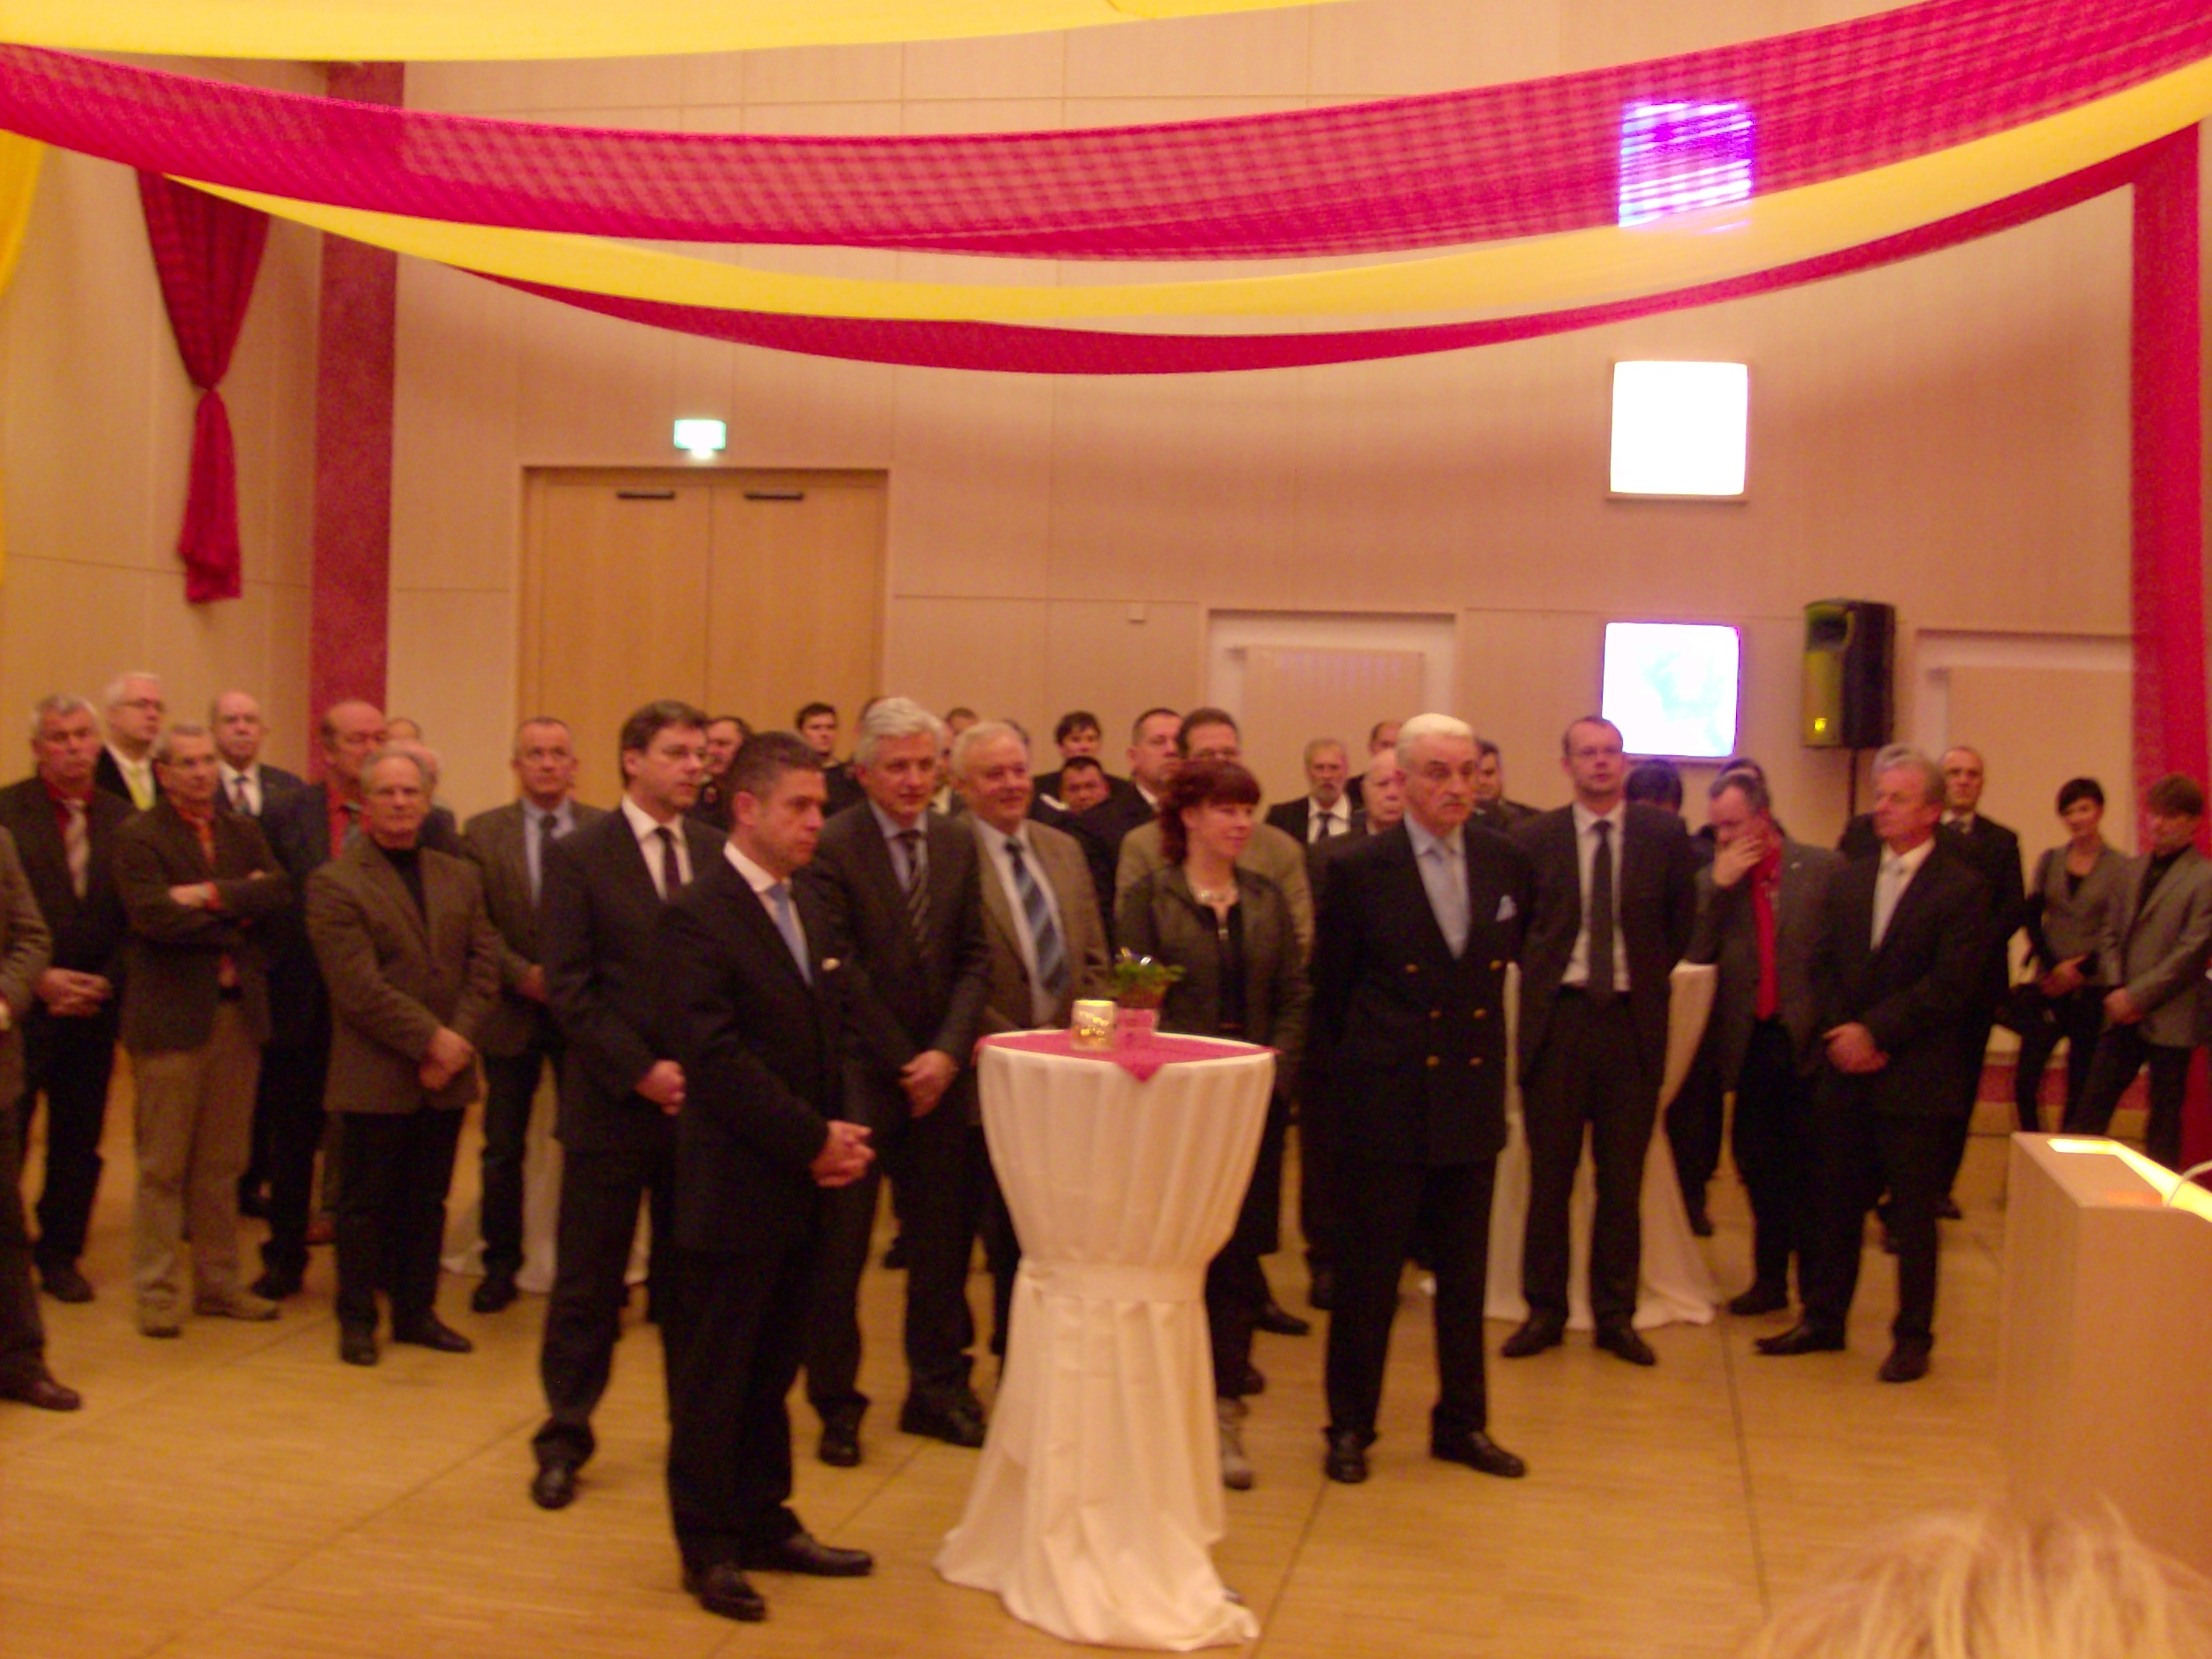 Die Gäste des Neujahrempfanges in Oschatz mit Manfred Kolbe in der Mitte.